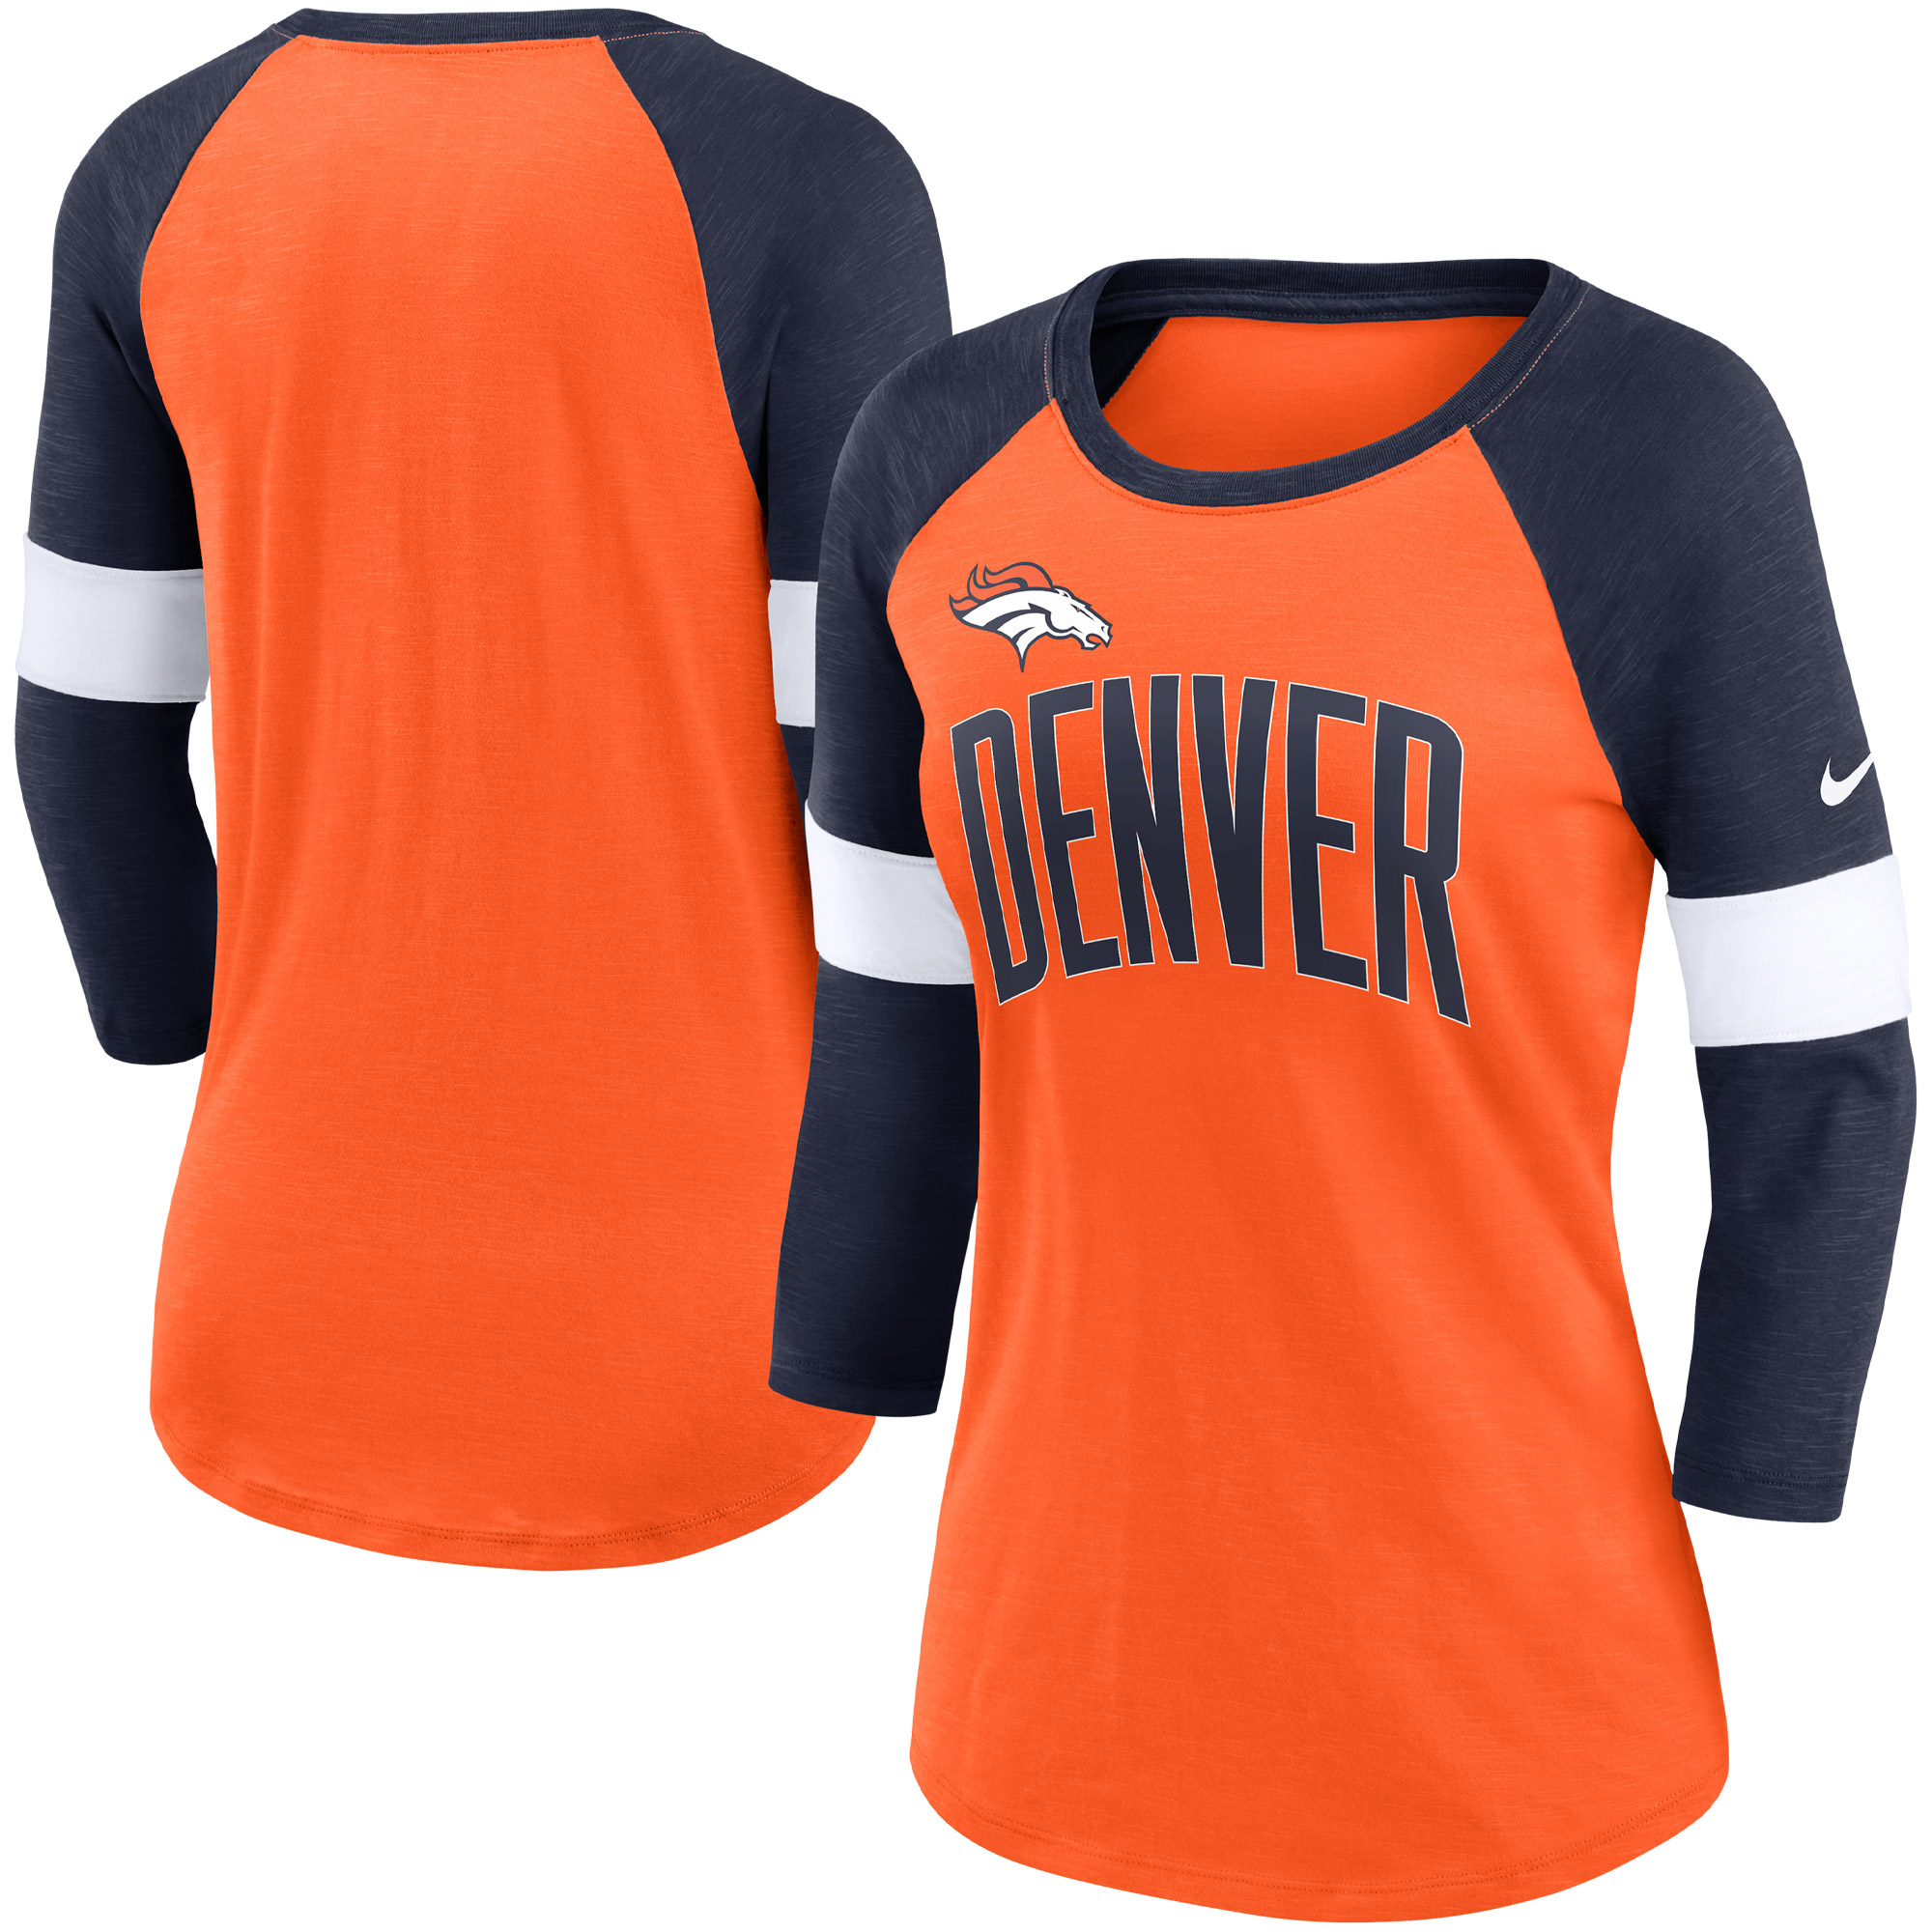 Nike Denver Broncos Damen-Fußball-Pride-T-Shirt mit 3/4-Raglanärmeln, Orange meliert/Marineblau meliert